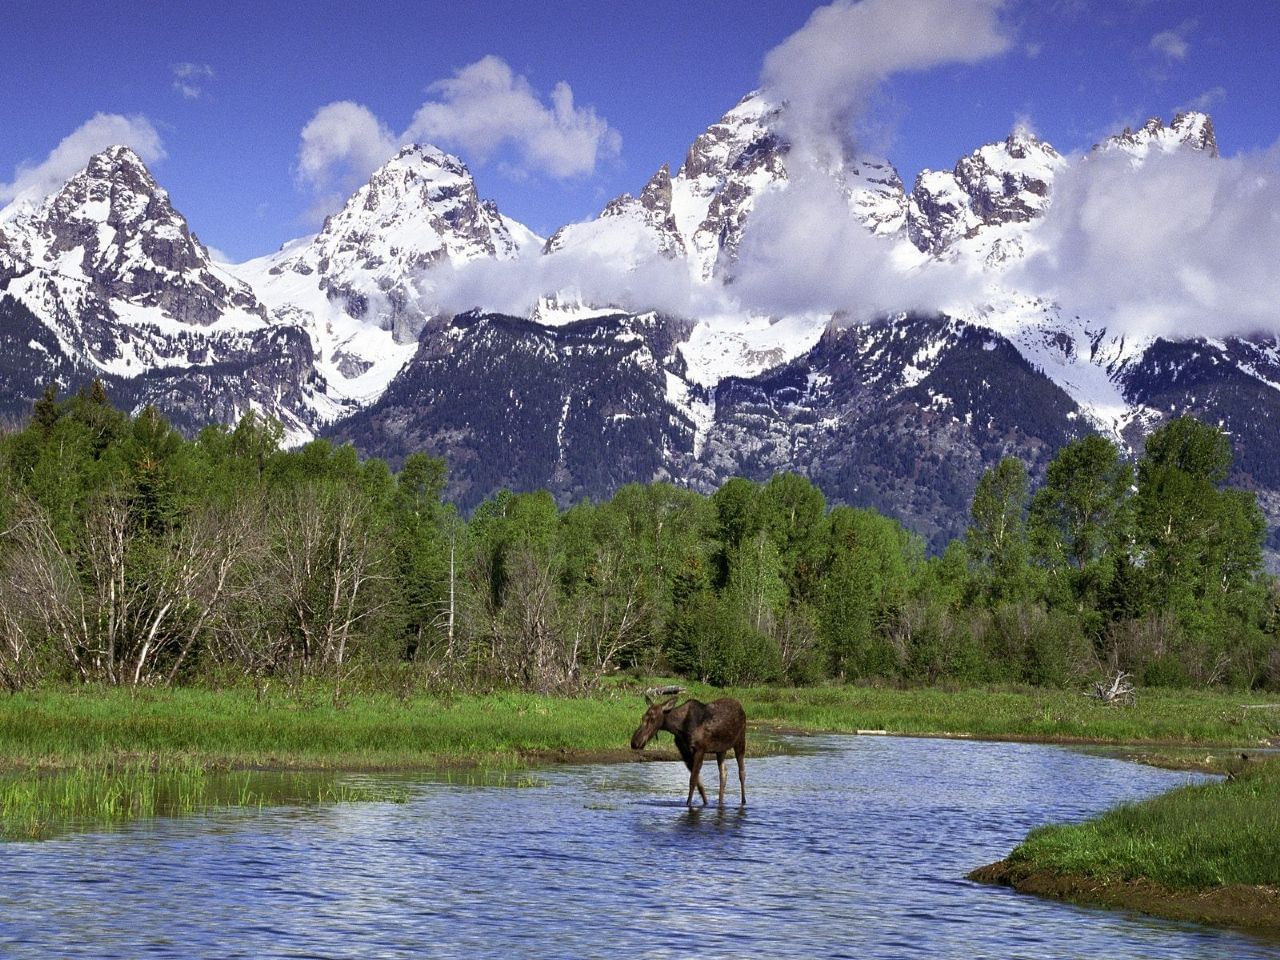 A moose crossing a river